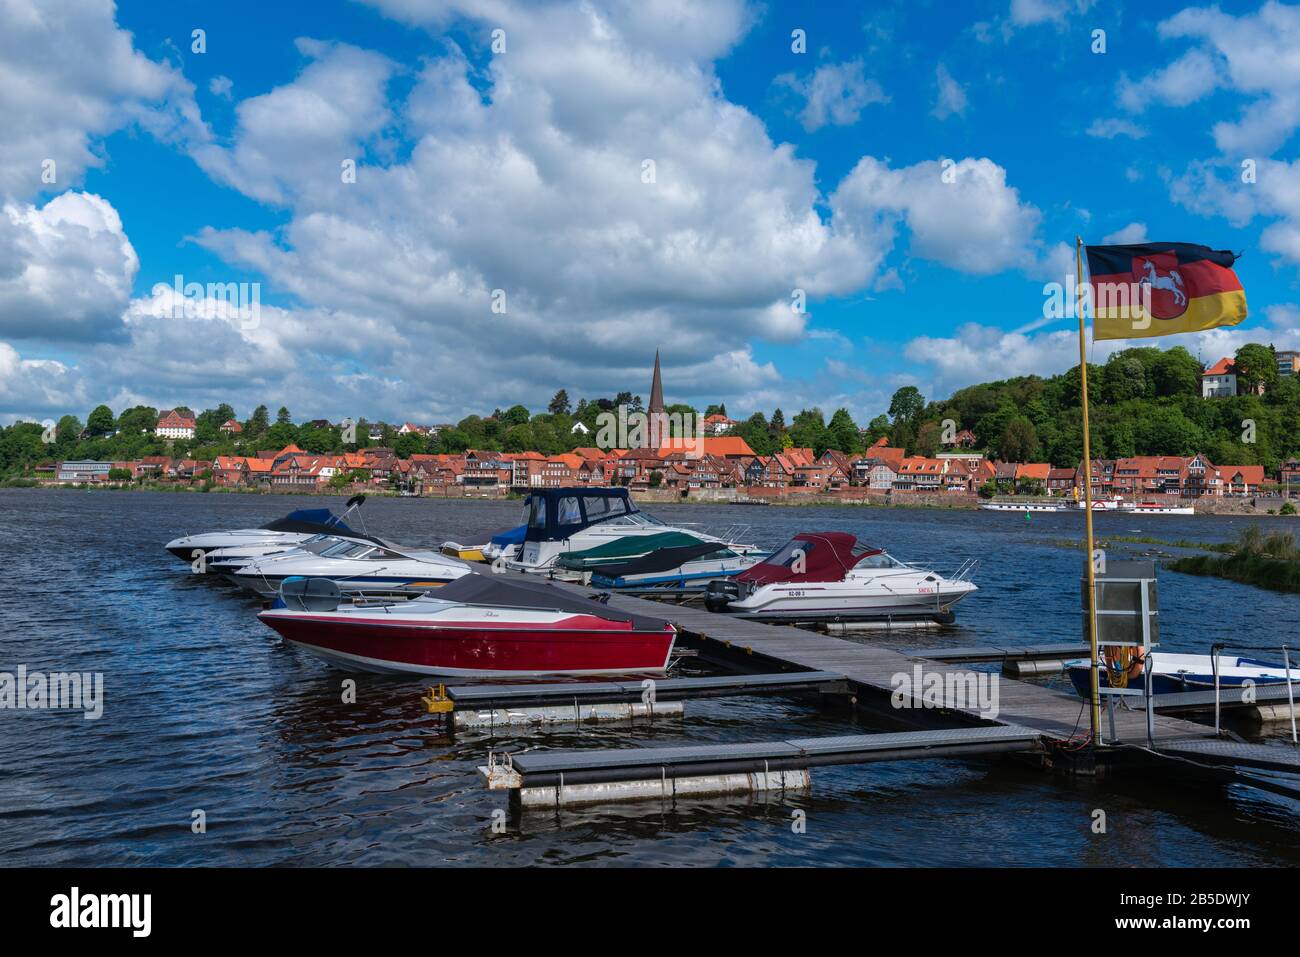 Città storica di Lauenburg sul fiume Elba, Contea di Lauenburg, Schleswig-Holstein, Germania settentrionale, Europa centrale Foto Stock